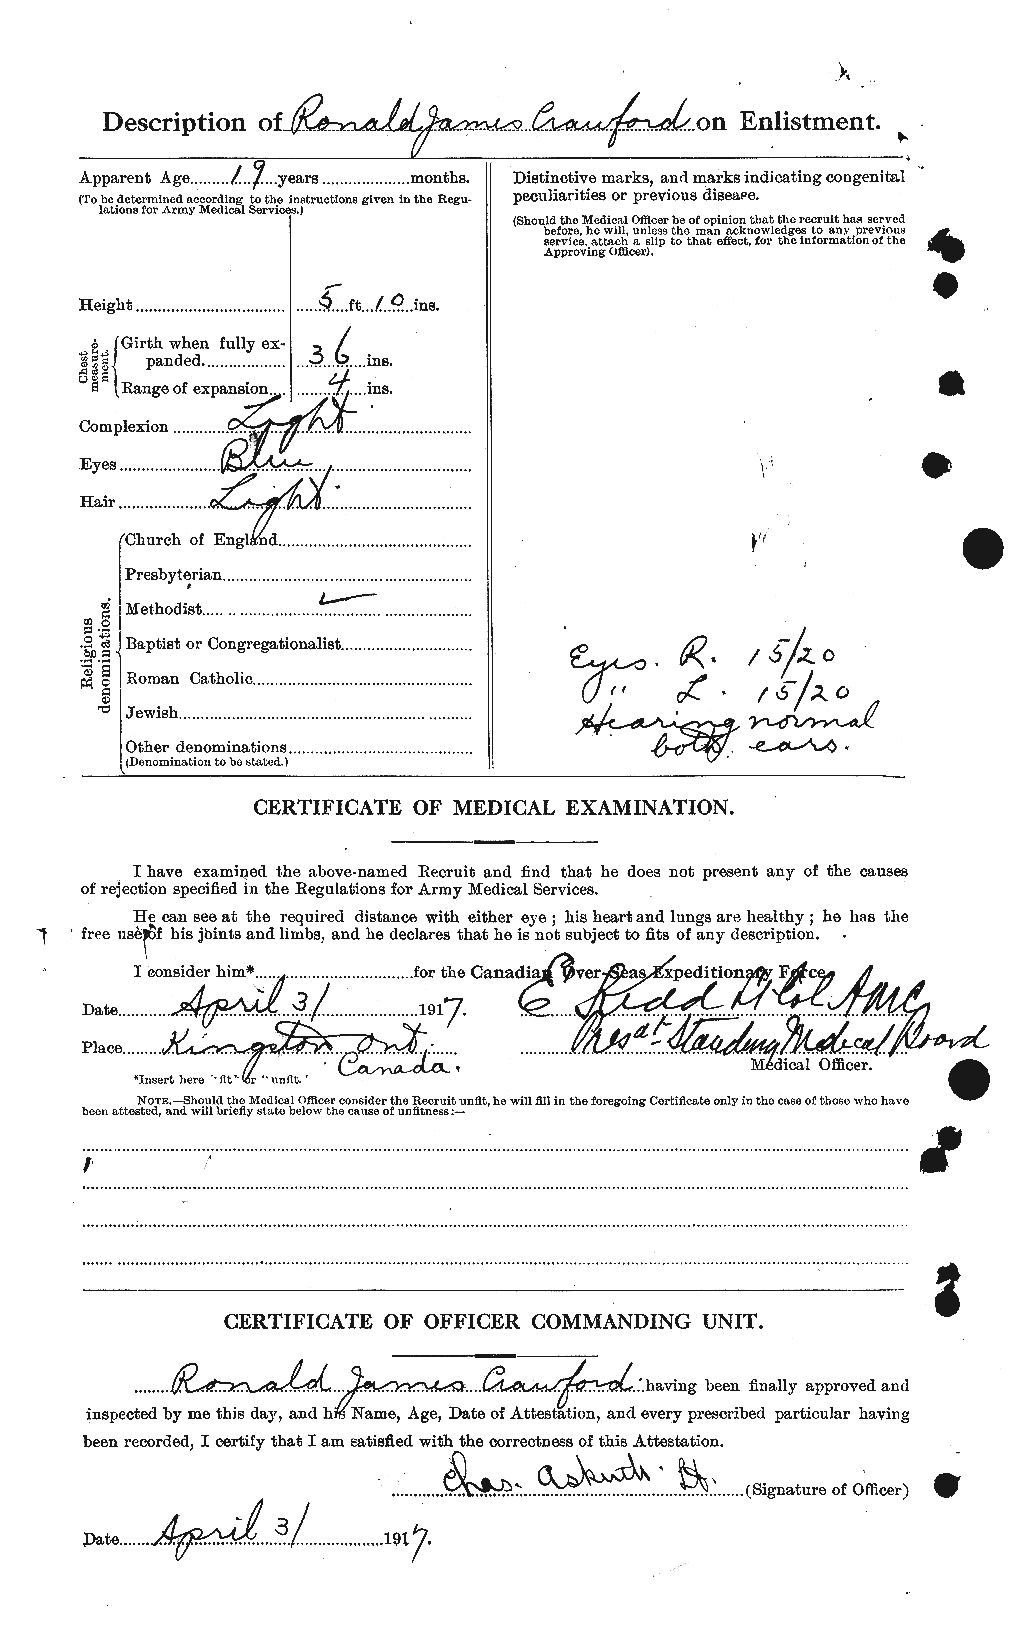 Dossiers du Personnel de la Première Guerre mondiale - CEC 061391b